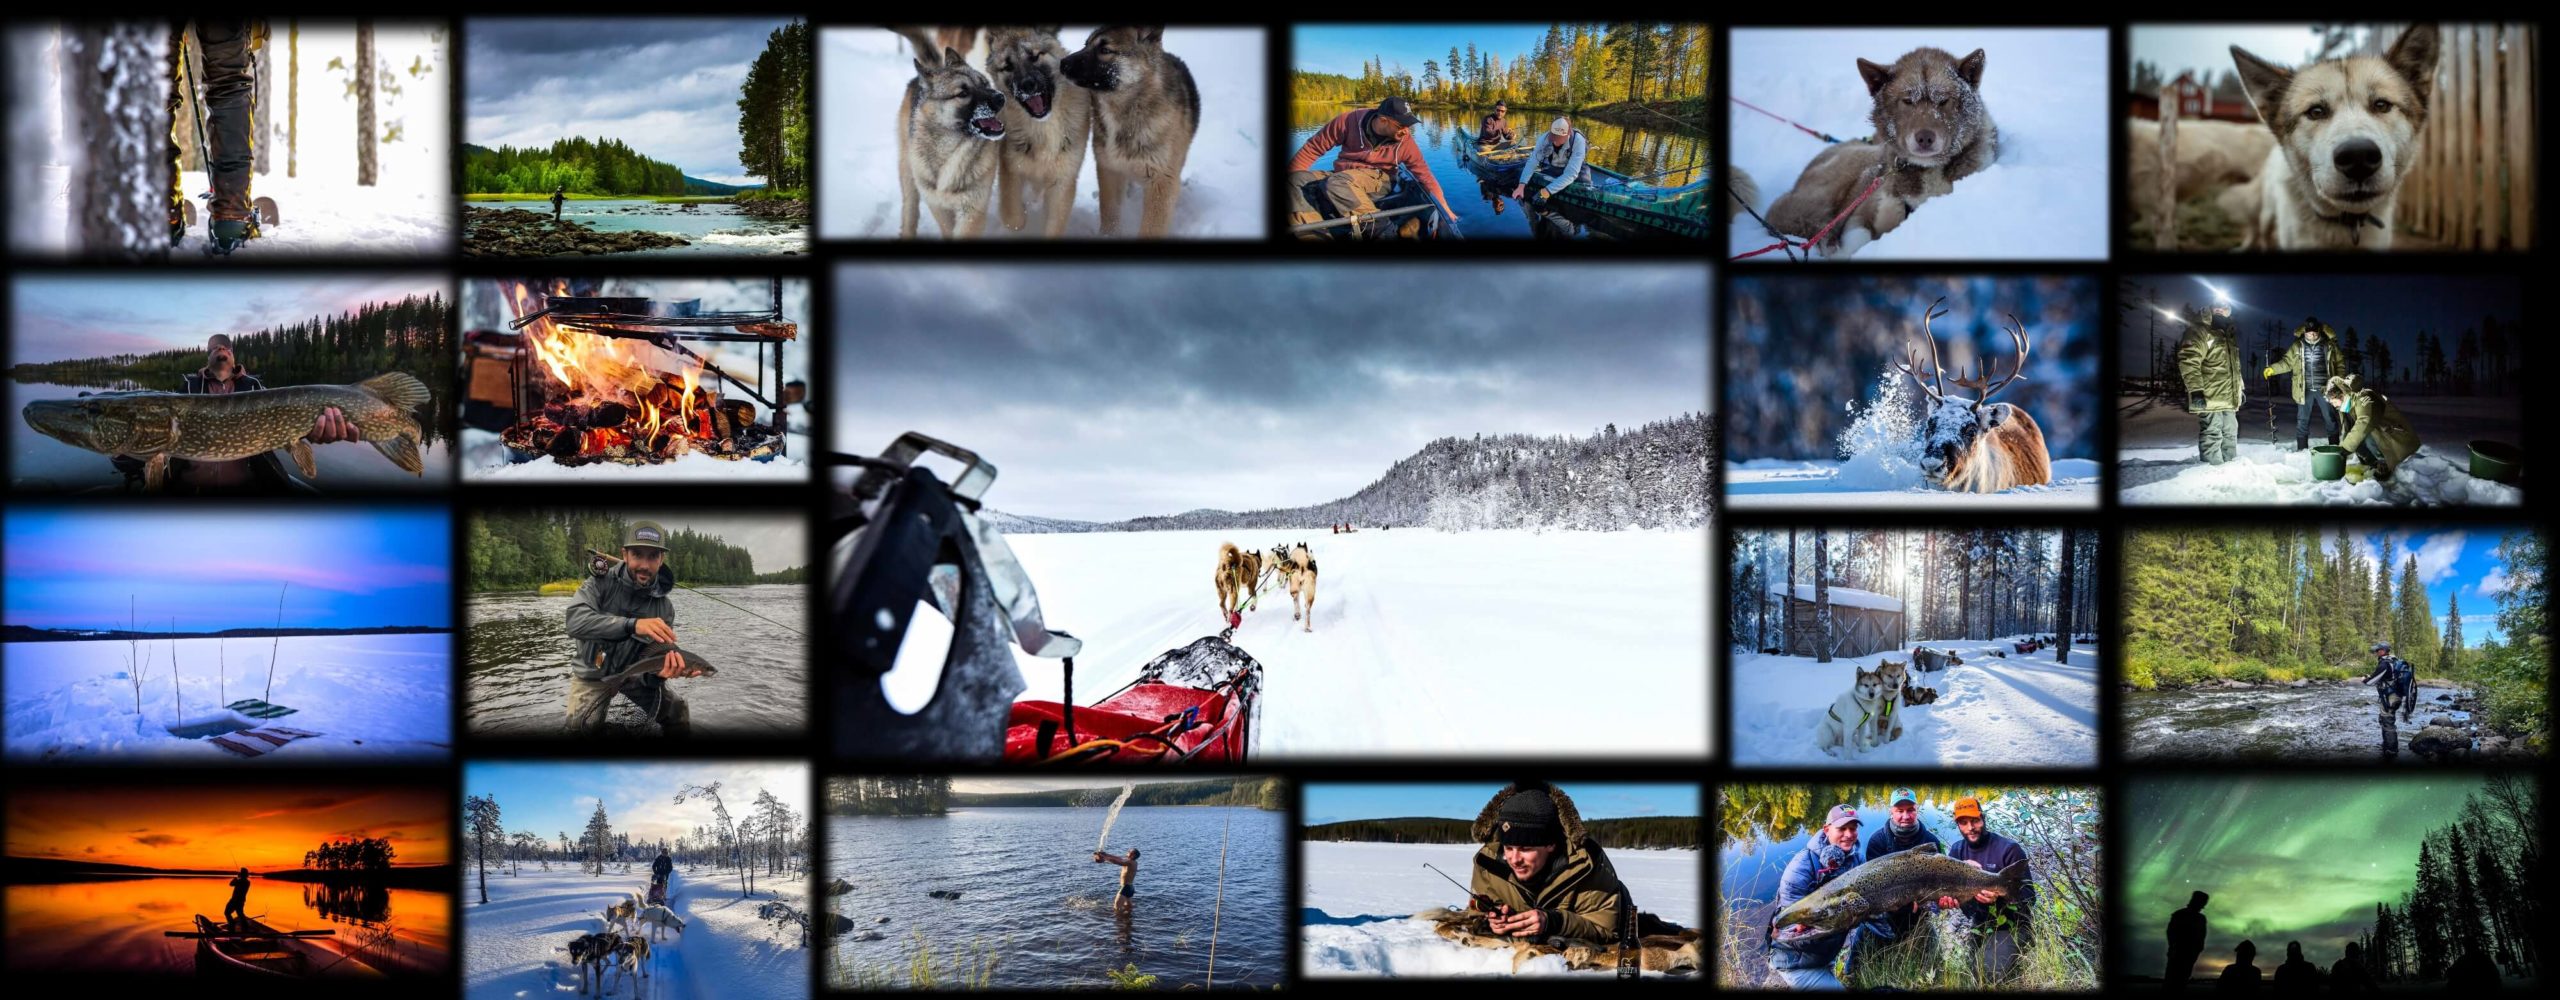 Collage de photos de sejours hiver et ete en laponie suedoise